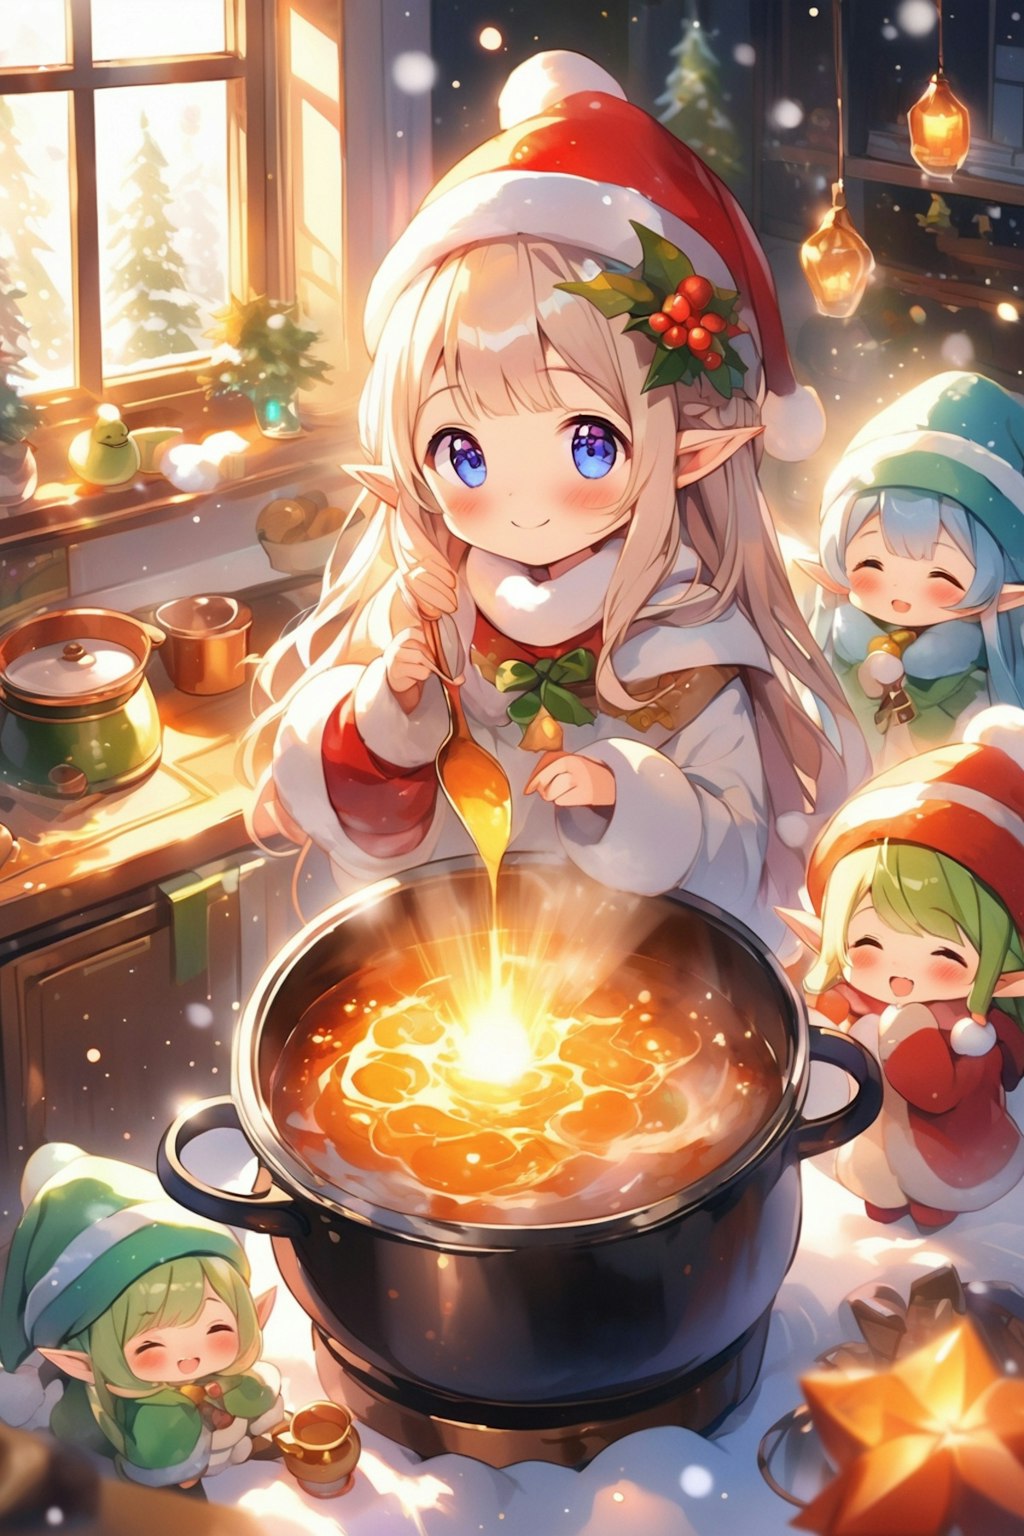 Elf preparing a meal 64